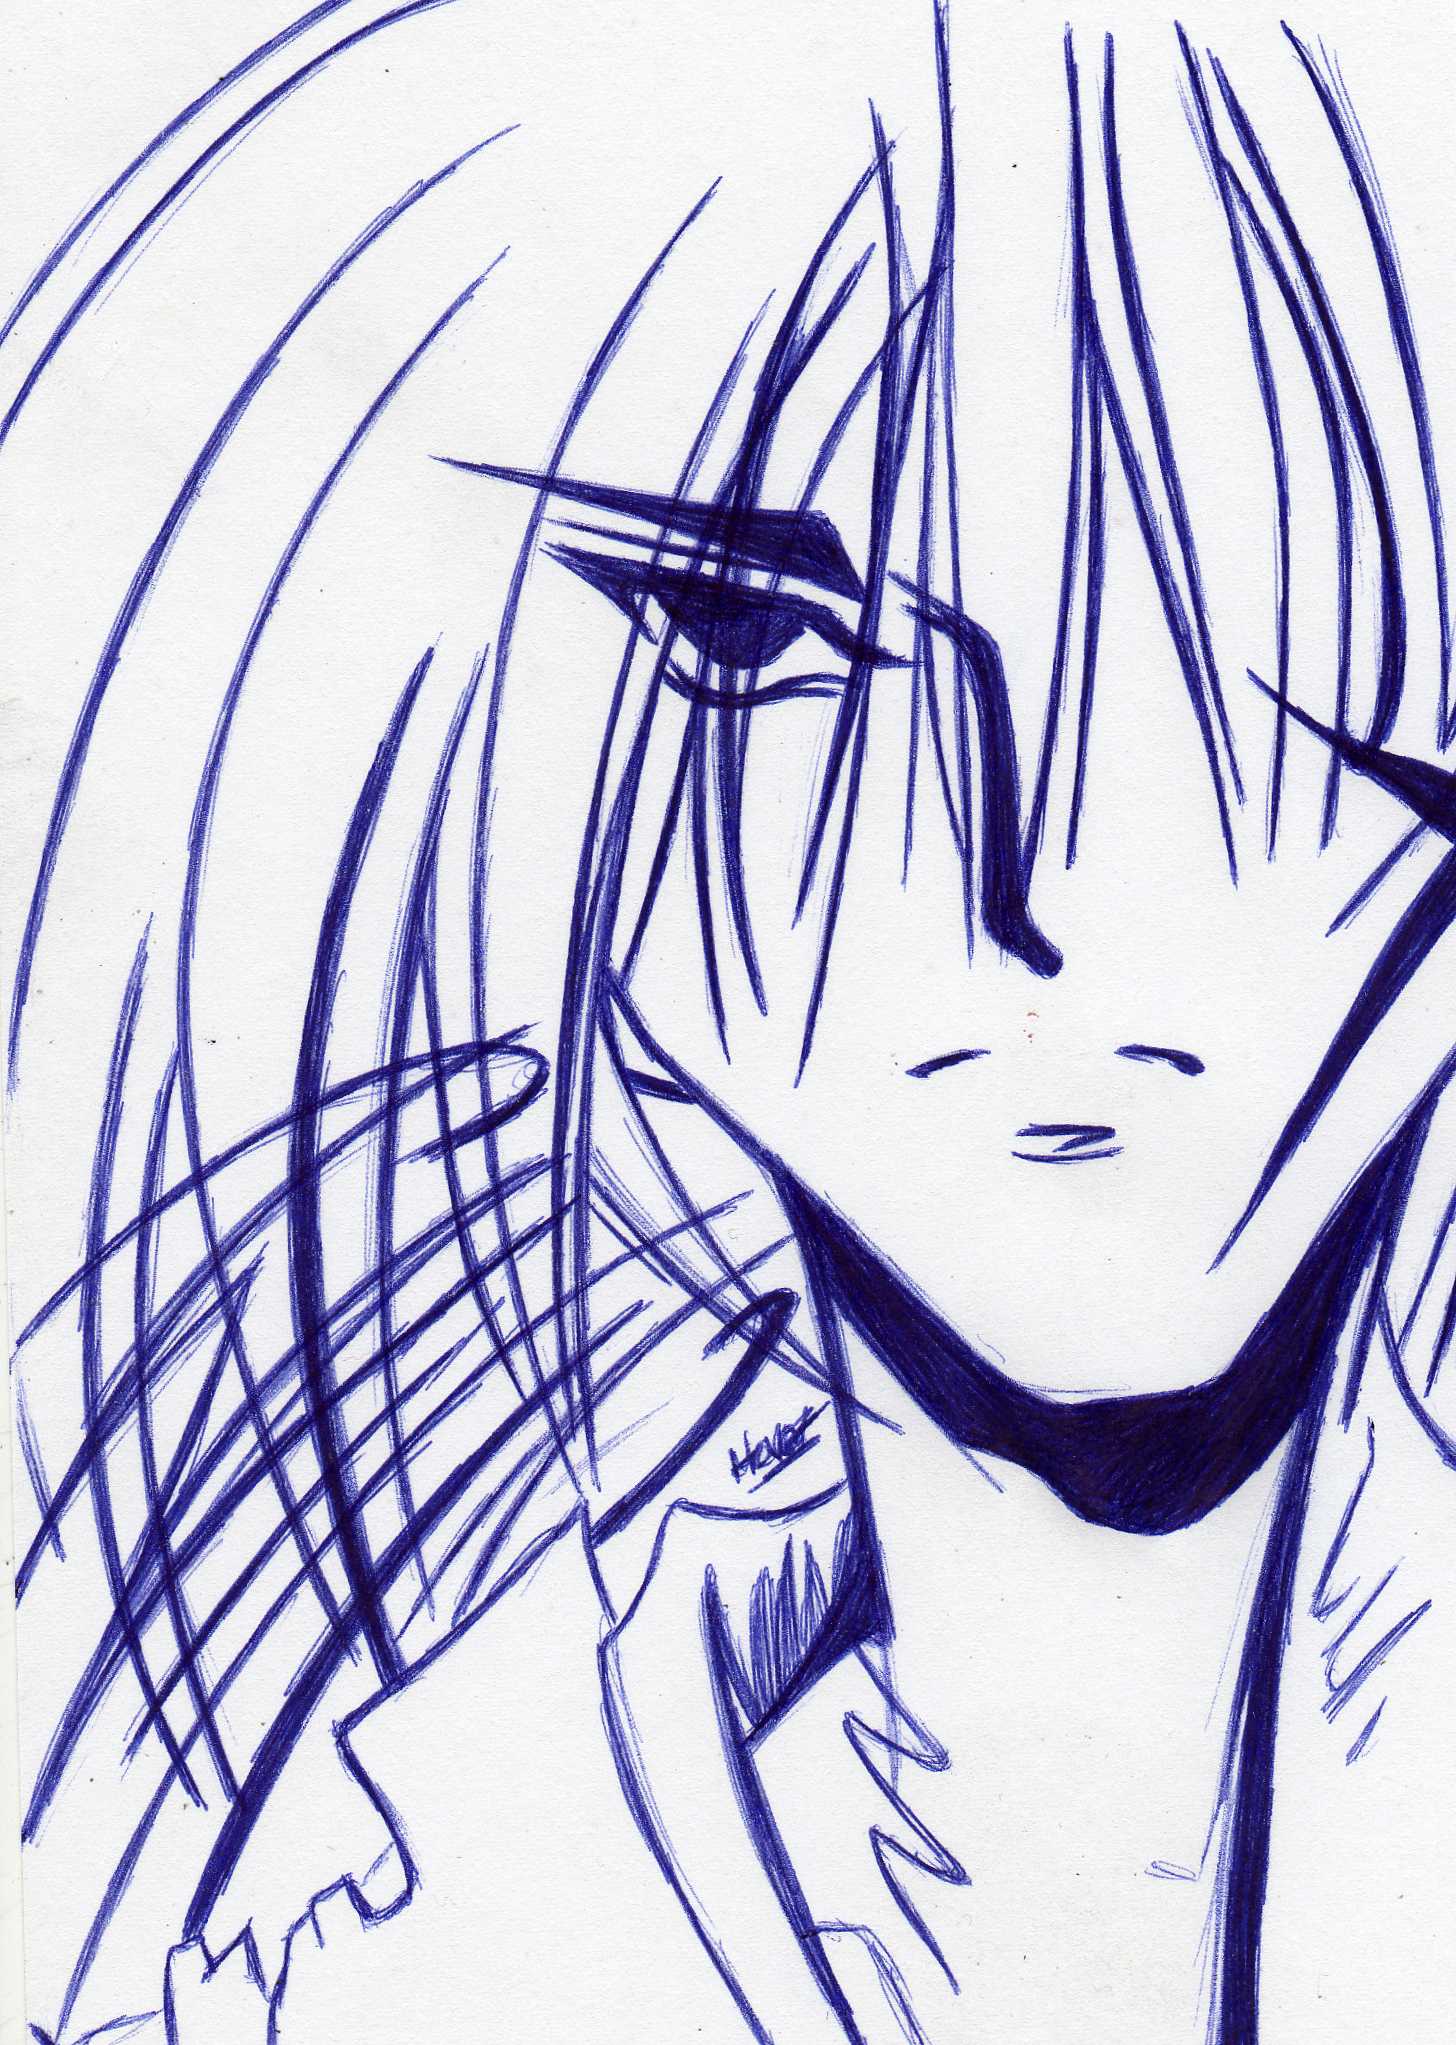 My Sorrow. - Himura Kenshin by sonicknuxfans